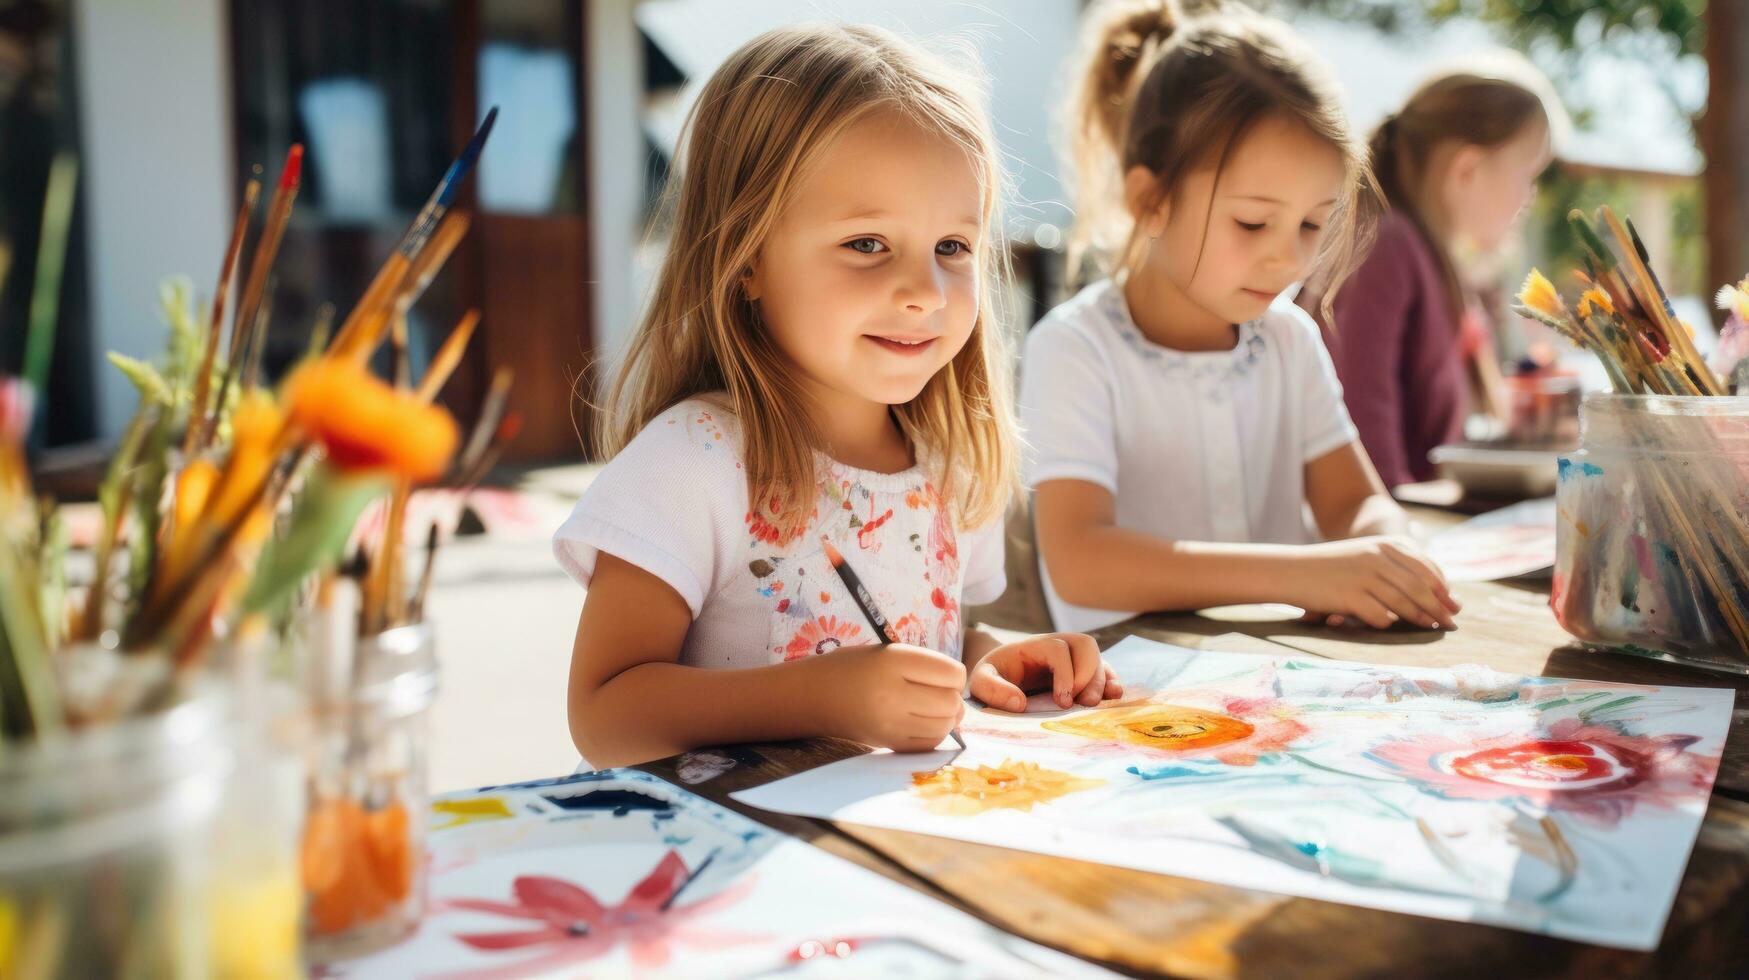 niños pintura con acuarelas a colegio foto